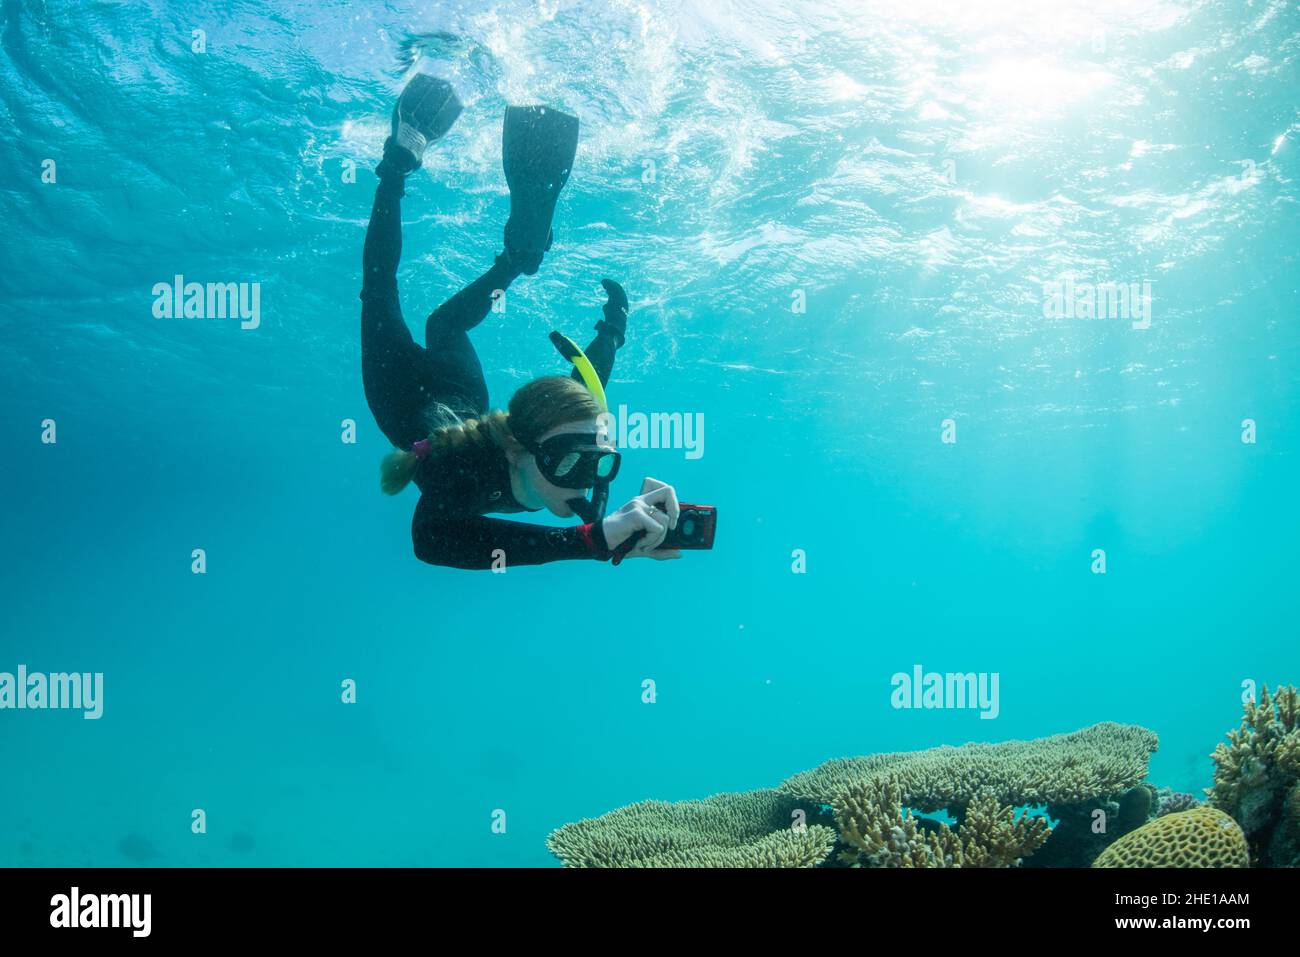 Uno snorkeler calcia sotto la superficie e tiene in mano una macchina fotografica scattando foto della barriera corallina sotto il mare rosso, in egitto. Foto Stock